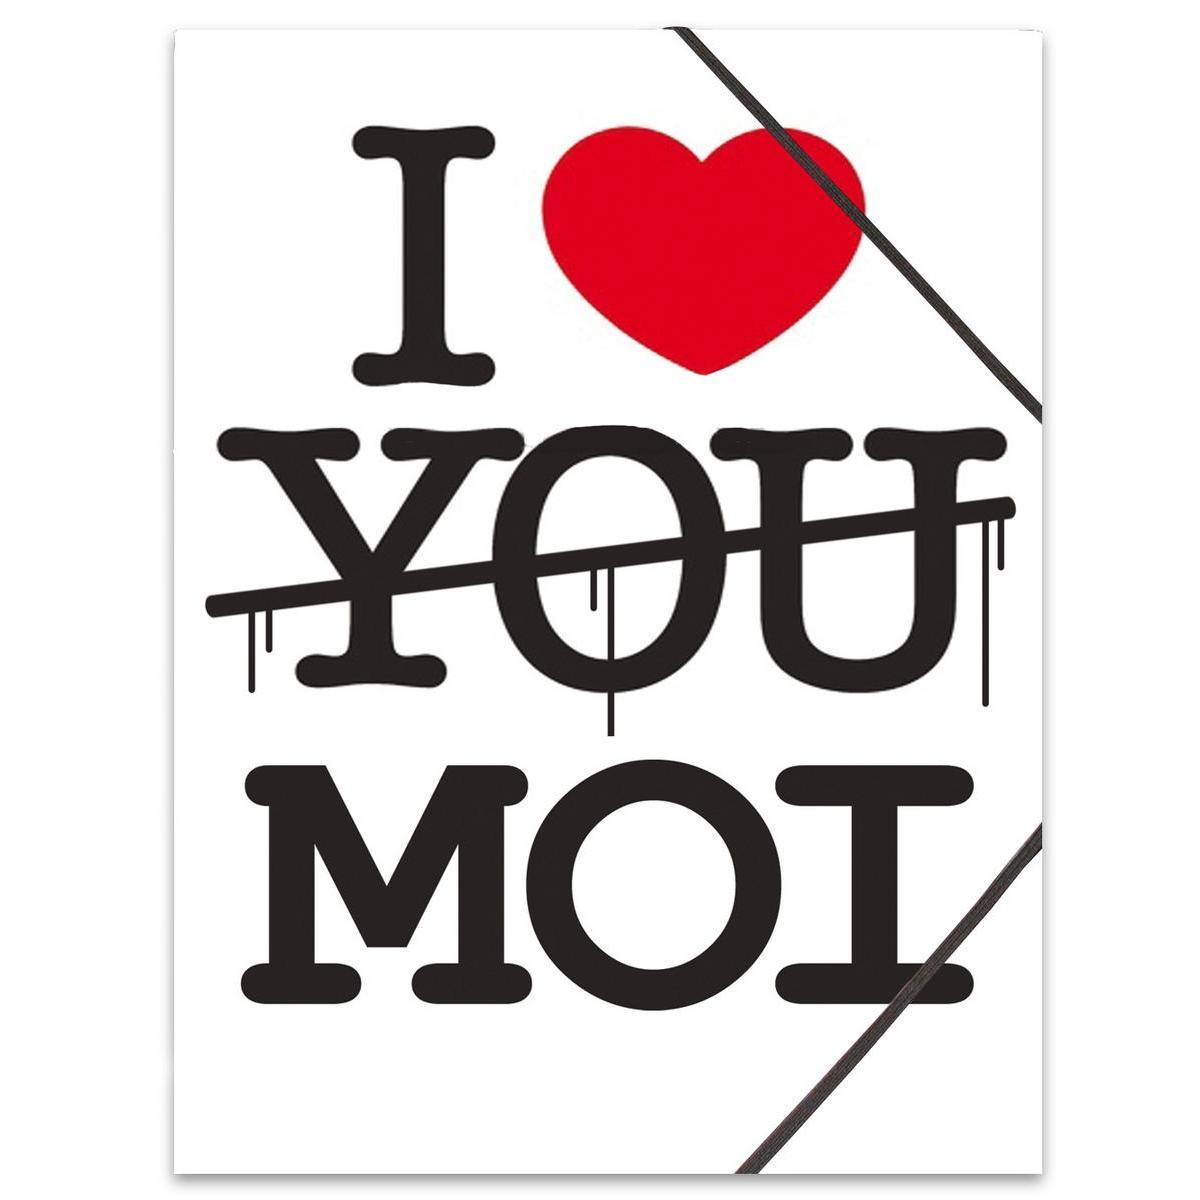 Pochette à rabats 'I love moi' - Carton souple - 24 x H 32 cm - Blanc, noir et rouge